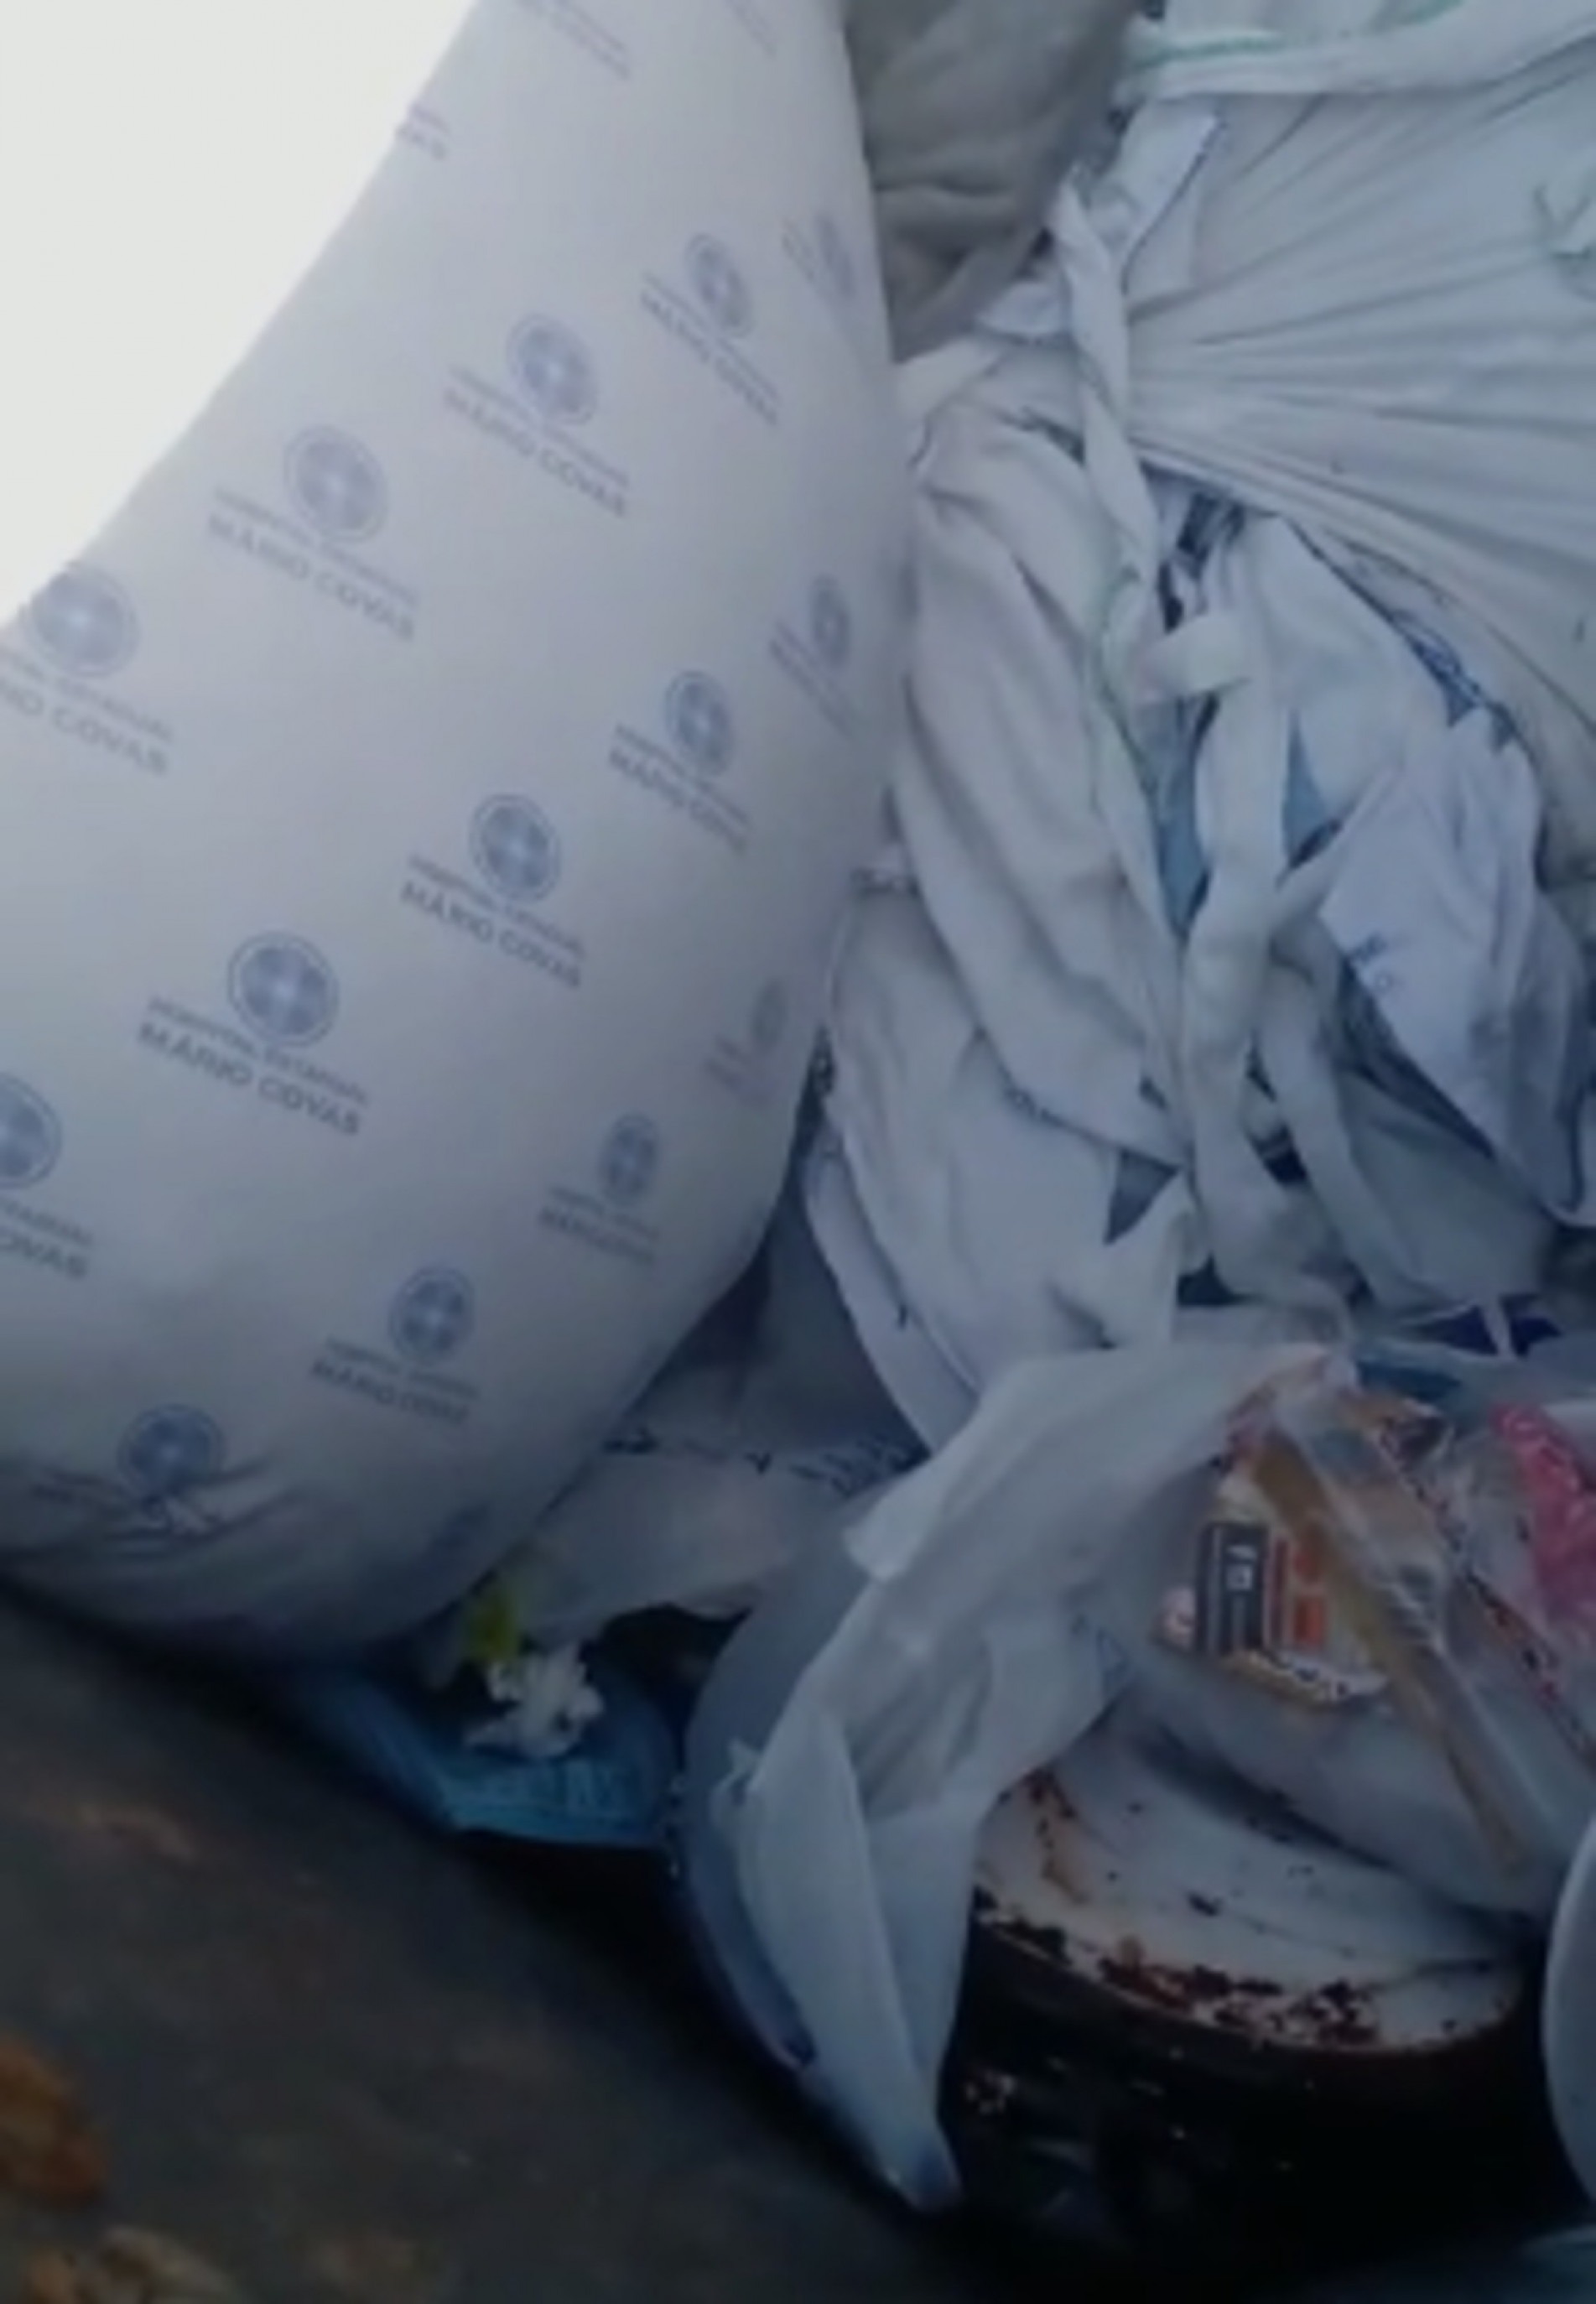 Dois containers de lixo hospitalar foram flagrados por moradores que passavam pela rua.